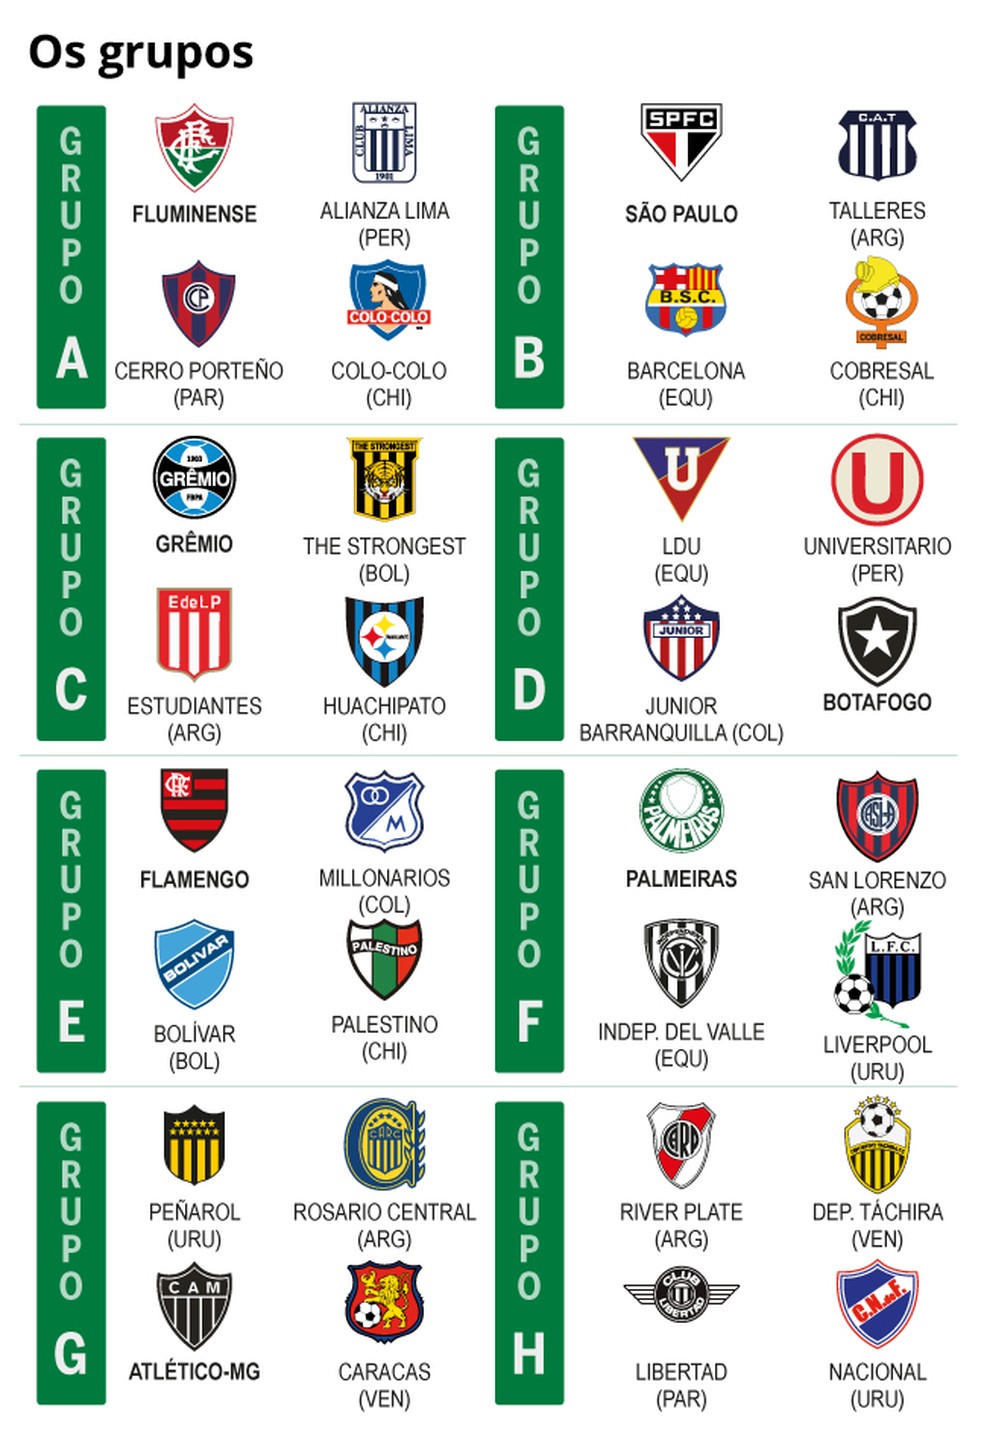 Os grupos sorteados da Libertadores — Foto: Reprodução